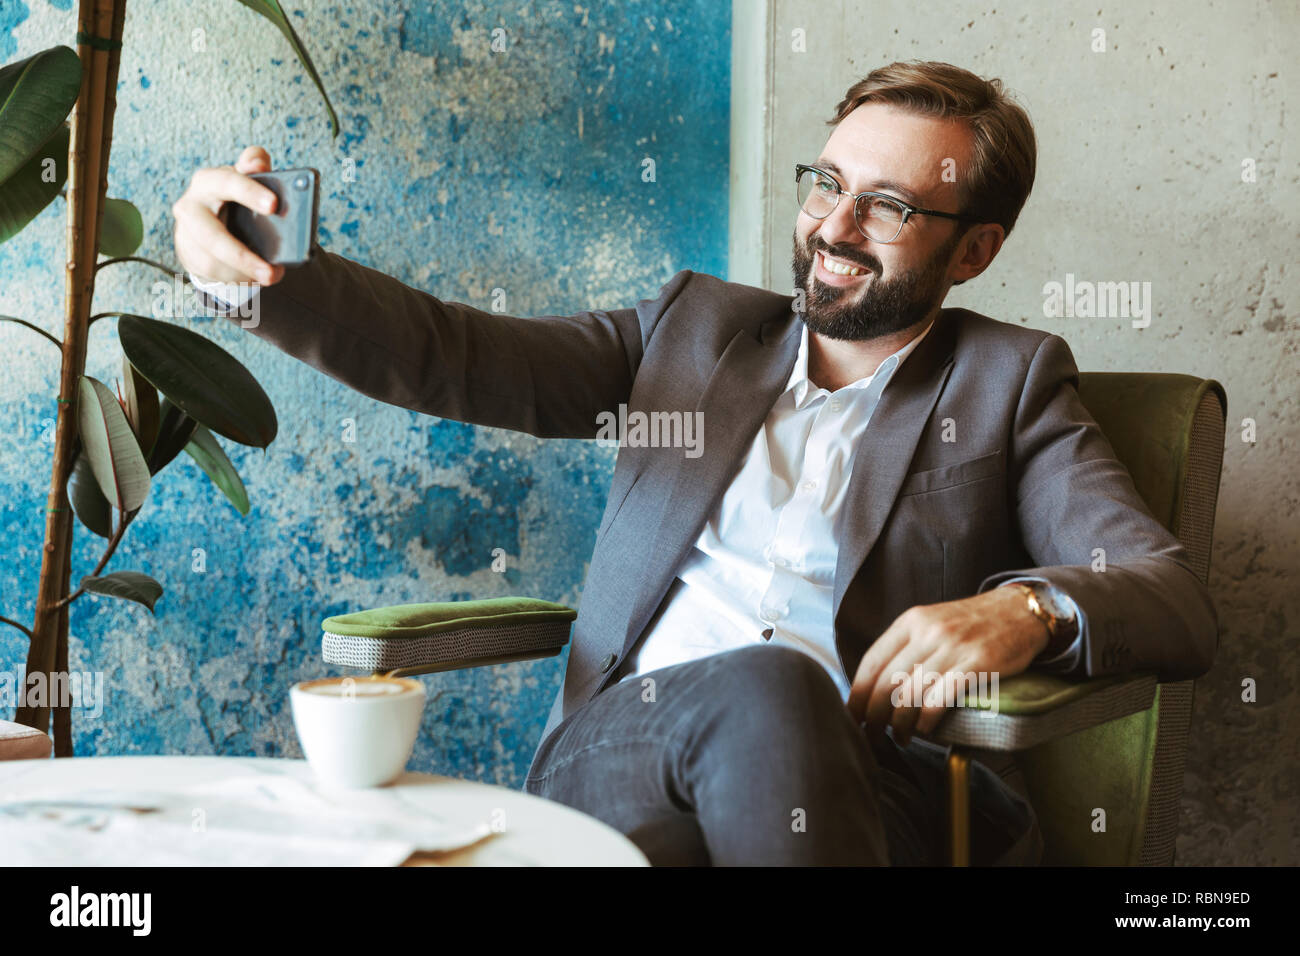 Lächeln, Geschäftsmann, tragen, Klage, eine selfie während im Cafe sitzen und Kaffee trinken Stockfoto